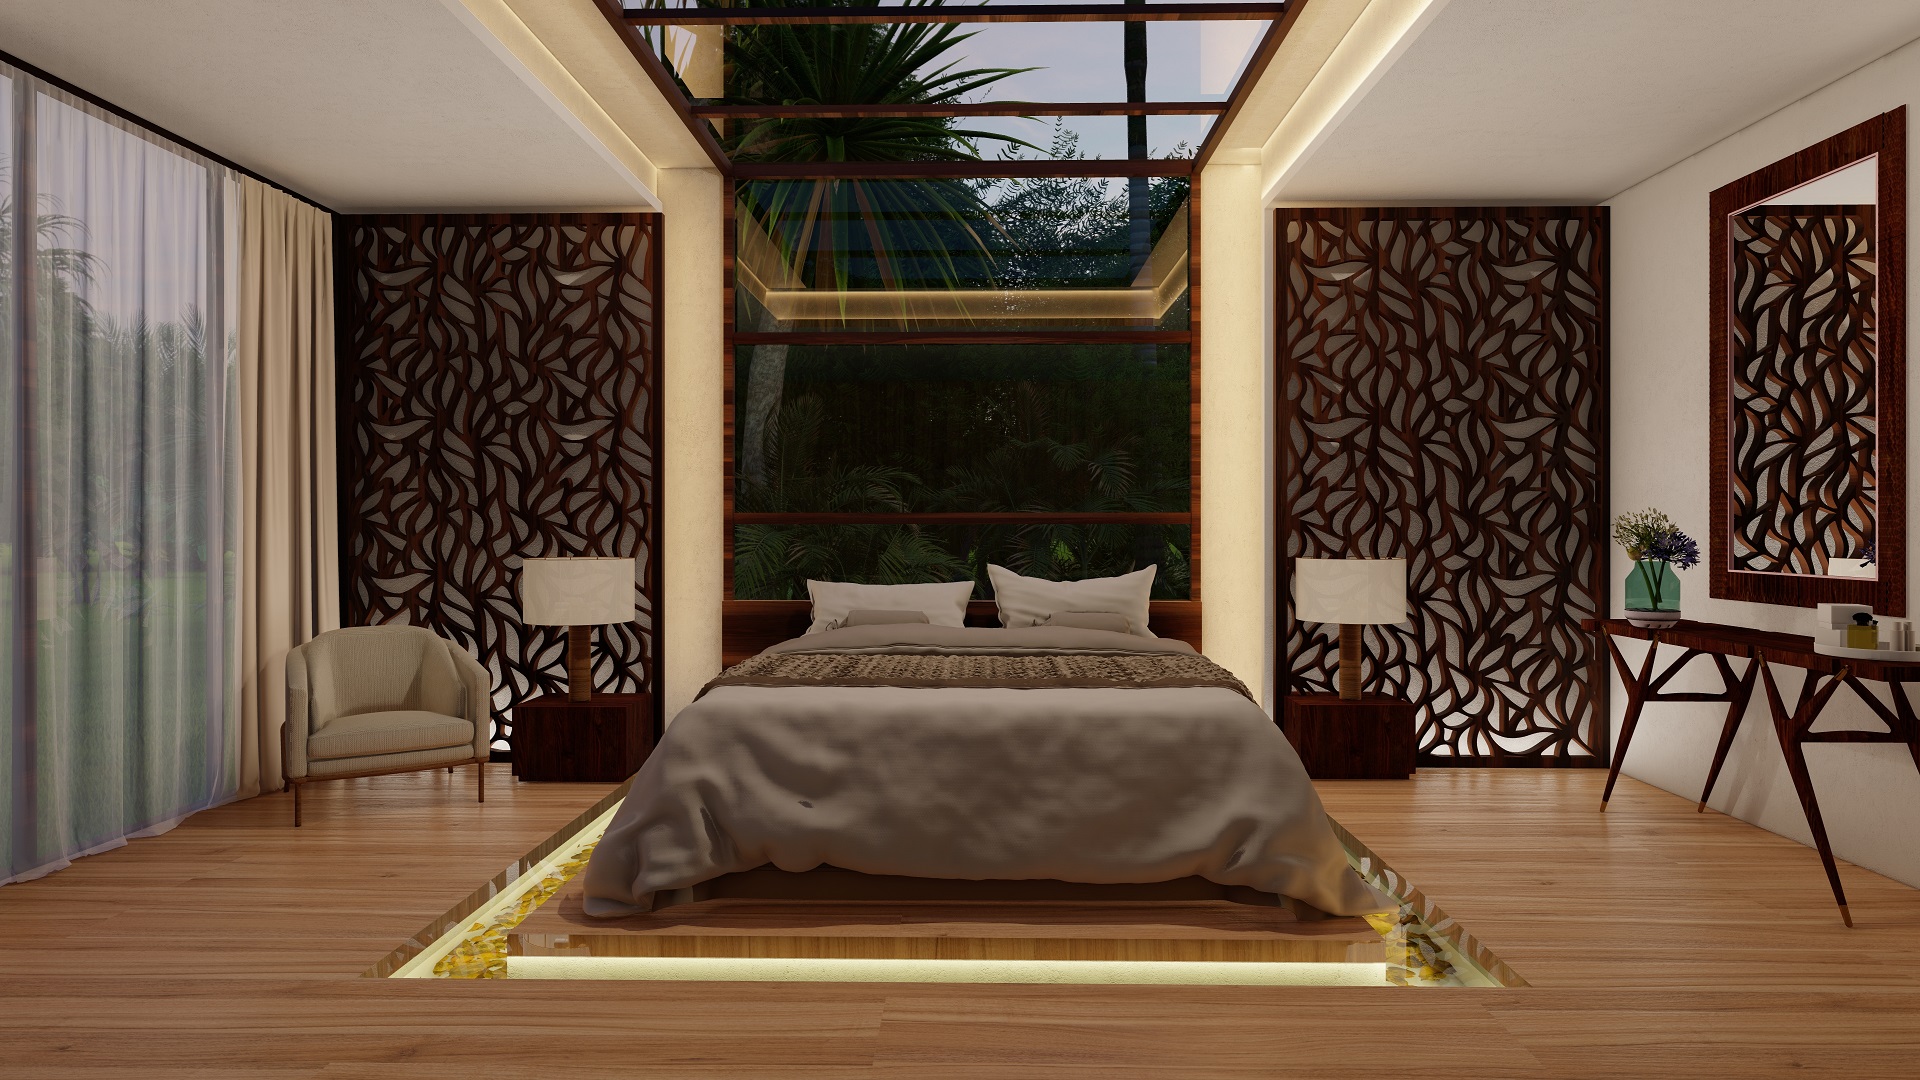 Detalle de diseño para habitaciones de hoteles y resorts